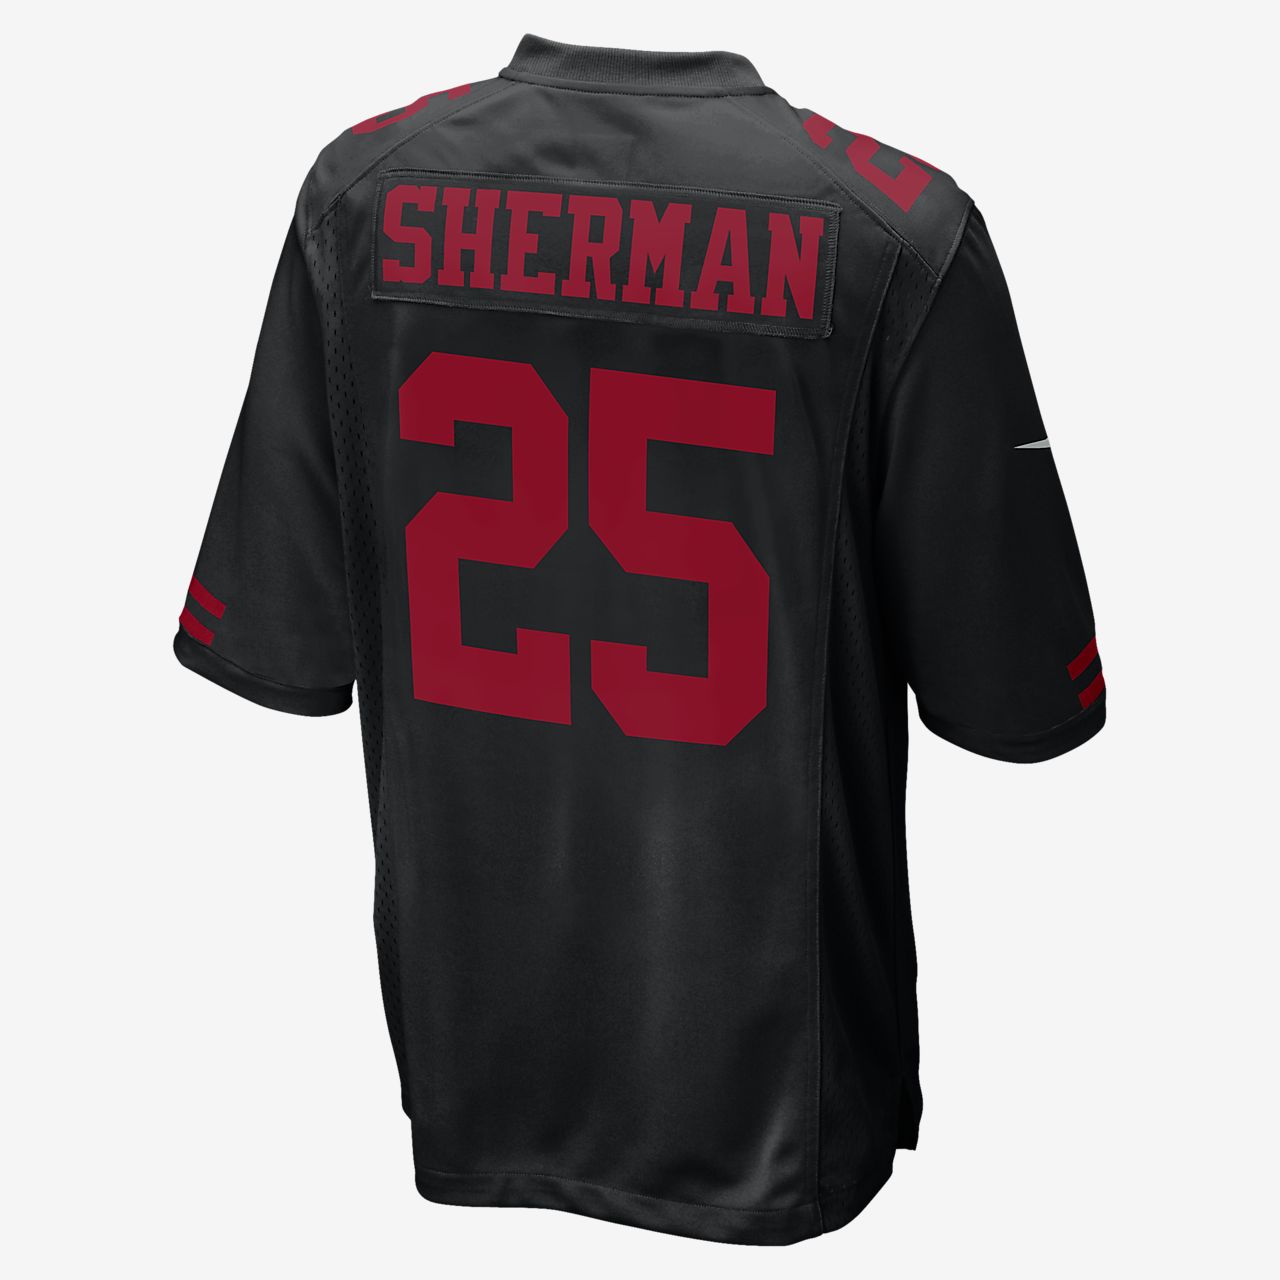 sherman jersey